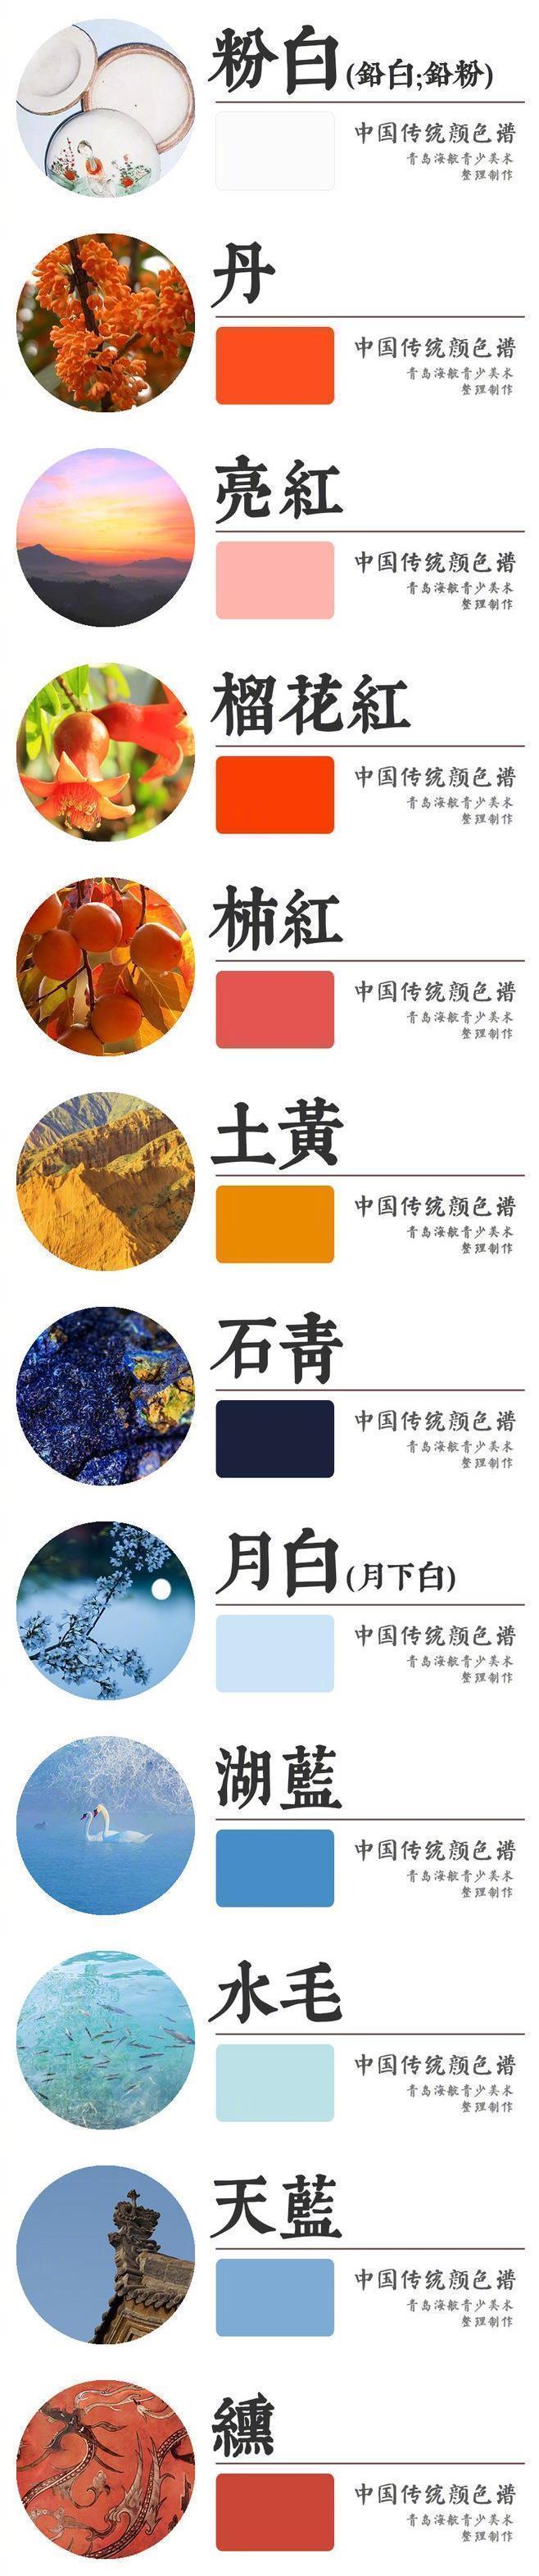 中国传统颜色